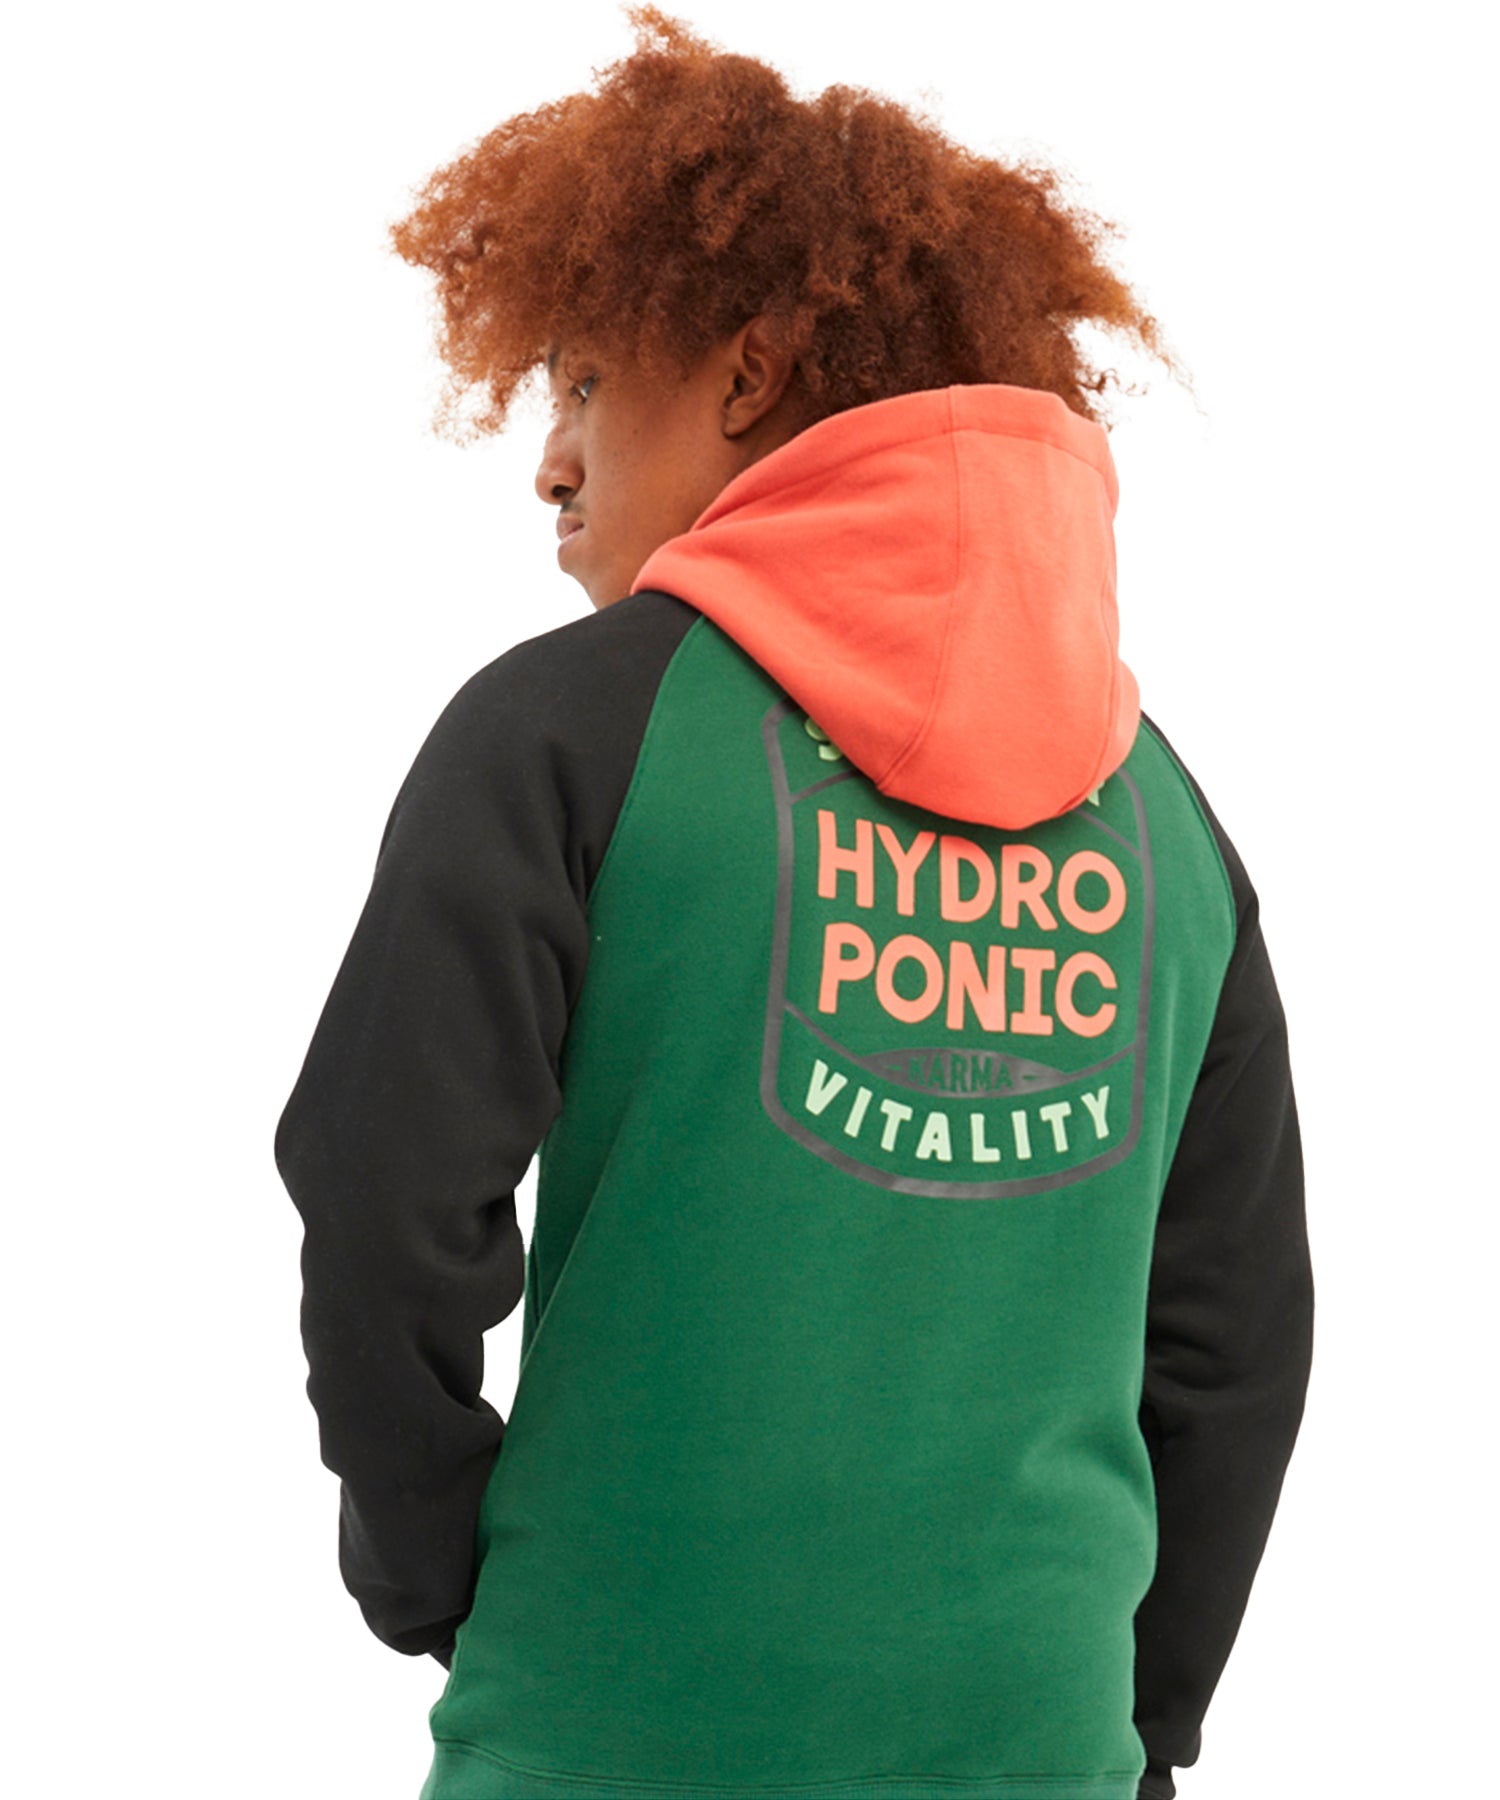 hydroponic-sudadera-con-capucha-karma-color-verde-negro-pequeño-logo-en-bolsillo-estampado-en-la-espalda-capucha-y-bolsillo-central